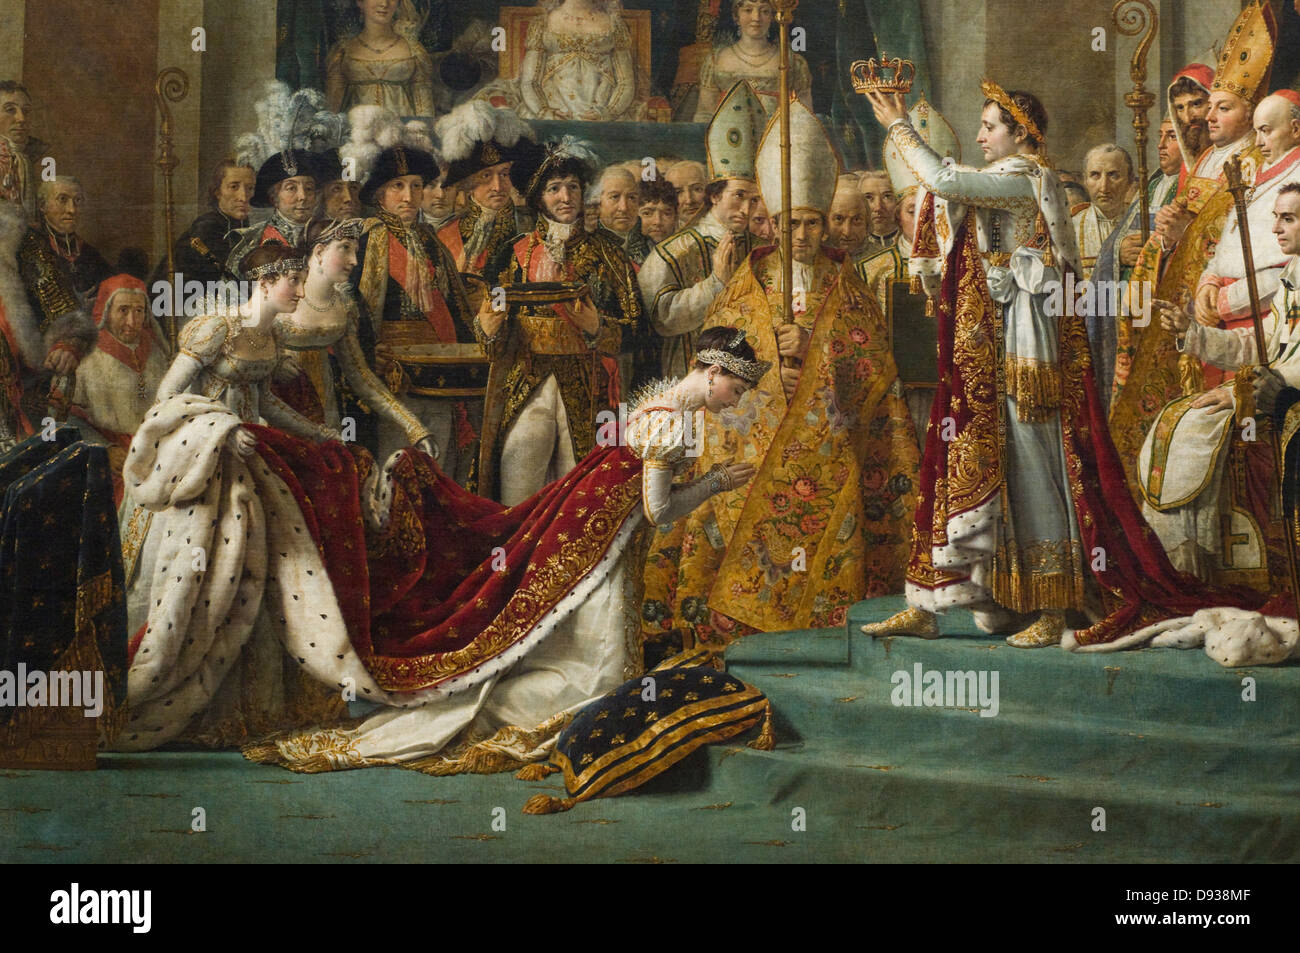 Jacques-Louis David, Le Sacre de Napoléon - Le Sacre de Napoléon 1805 - 1807 Détail XIX e siècle école française Louvre Mus Banque D'Images